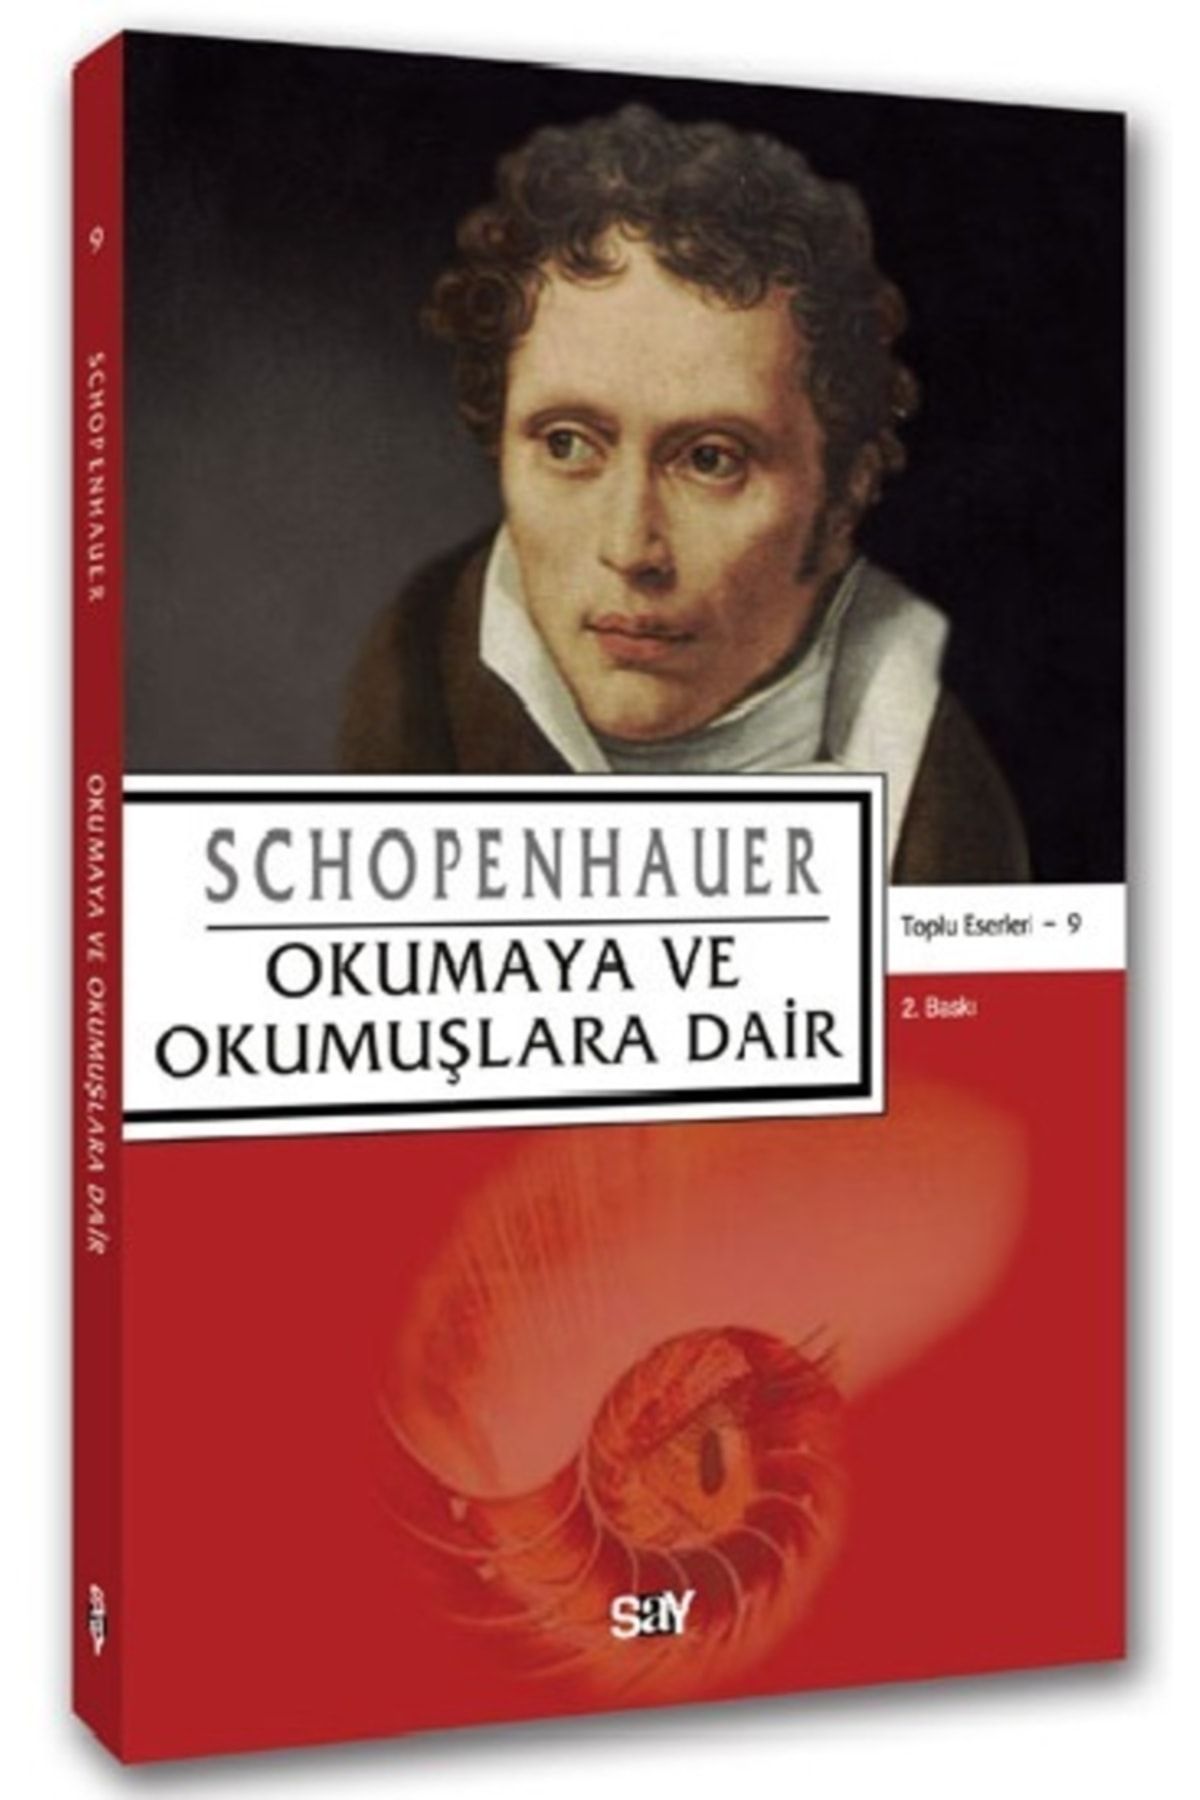 Say Yayınları Schopenhauer Kit-9 Okumaya Ve Okumuşlara Dair/say